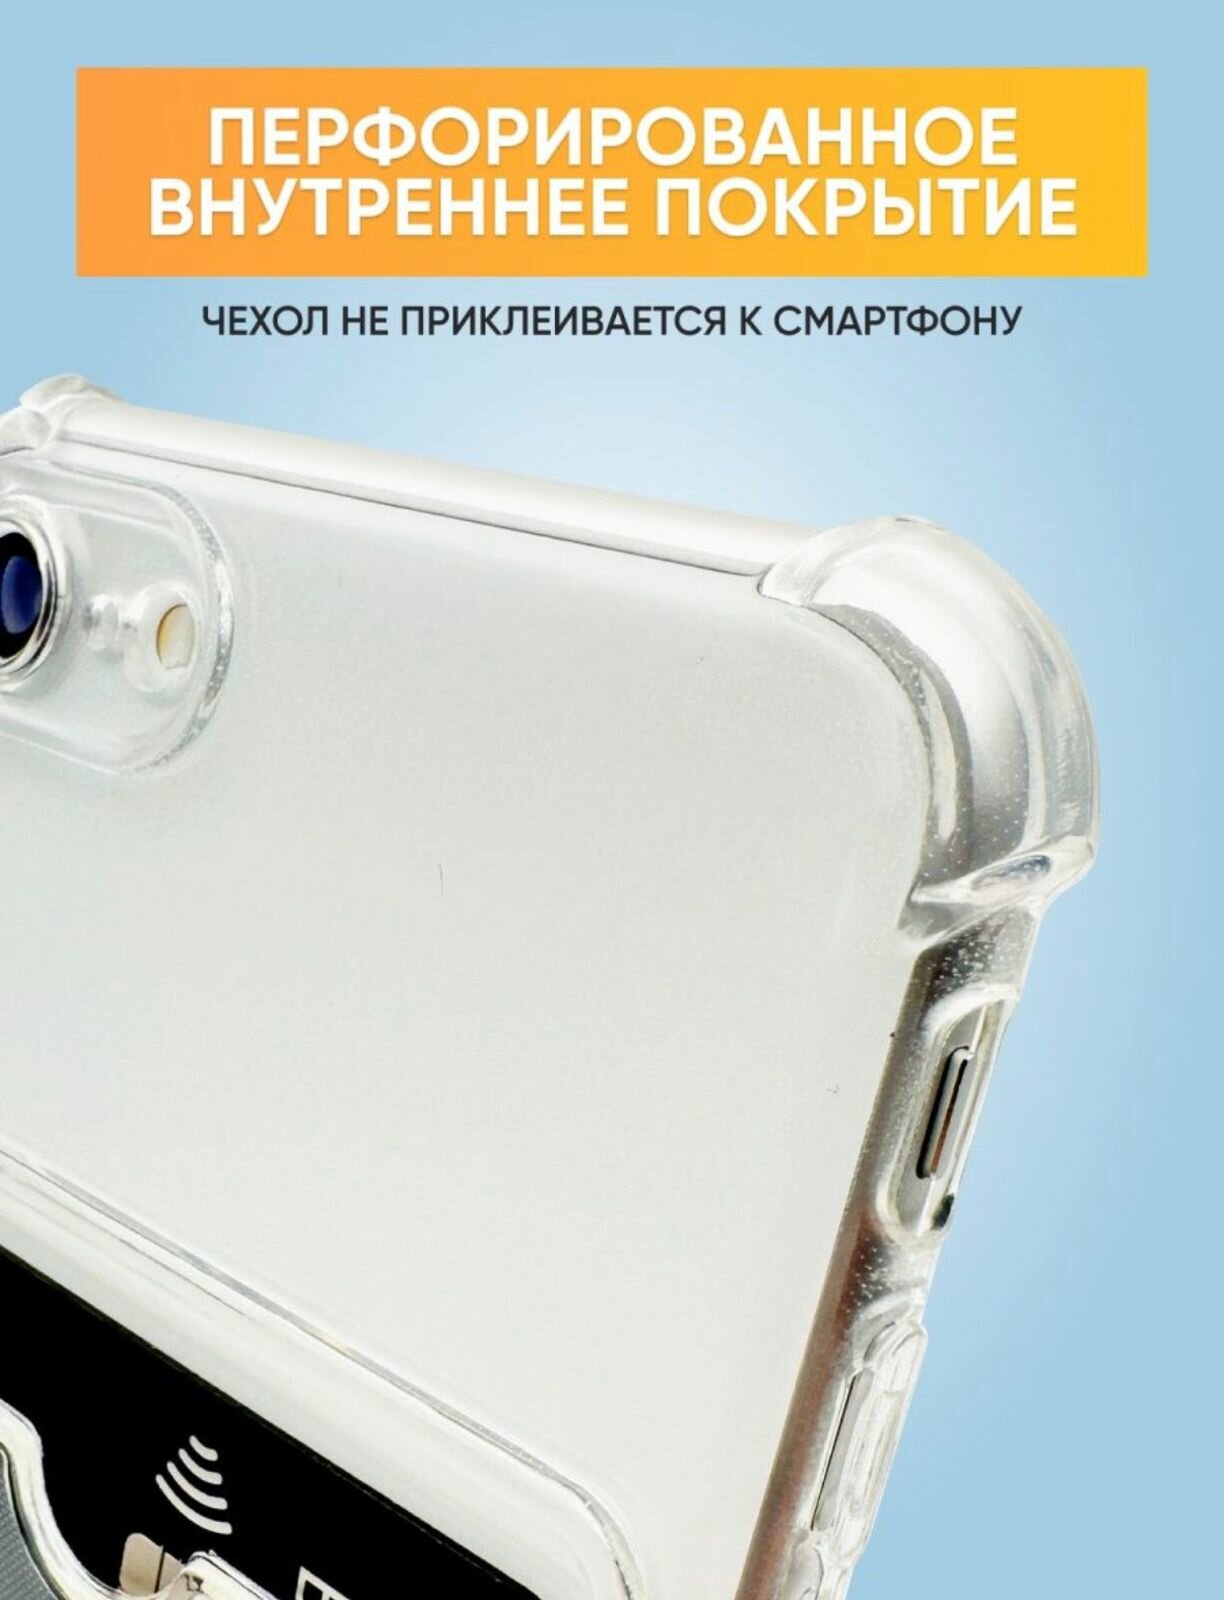 Прозрачный силиконовый чехол для IPhone 7/8/SE 2020 с карманом для карт Card Case